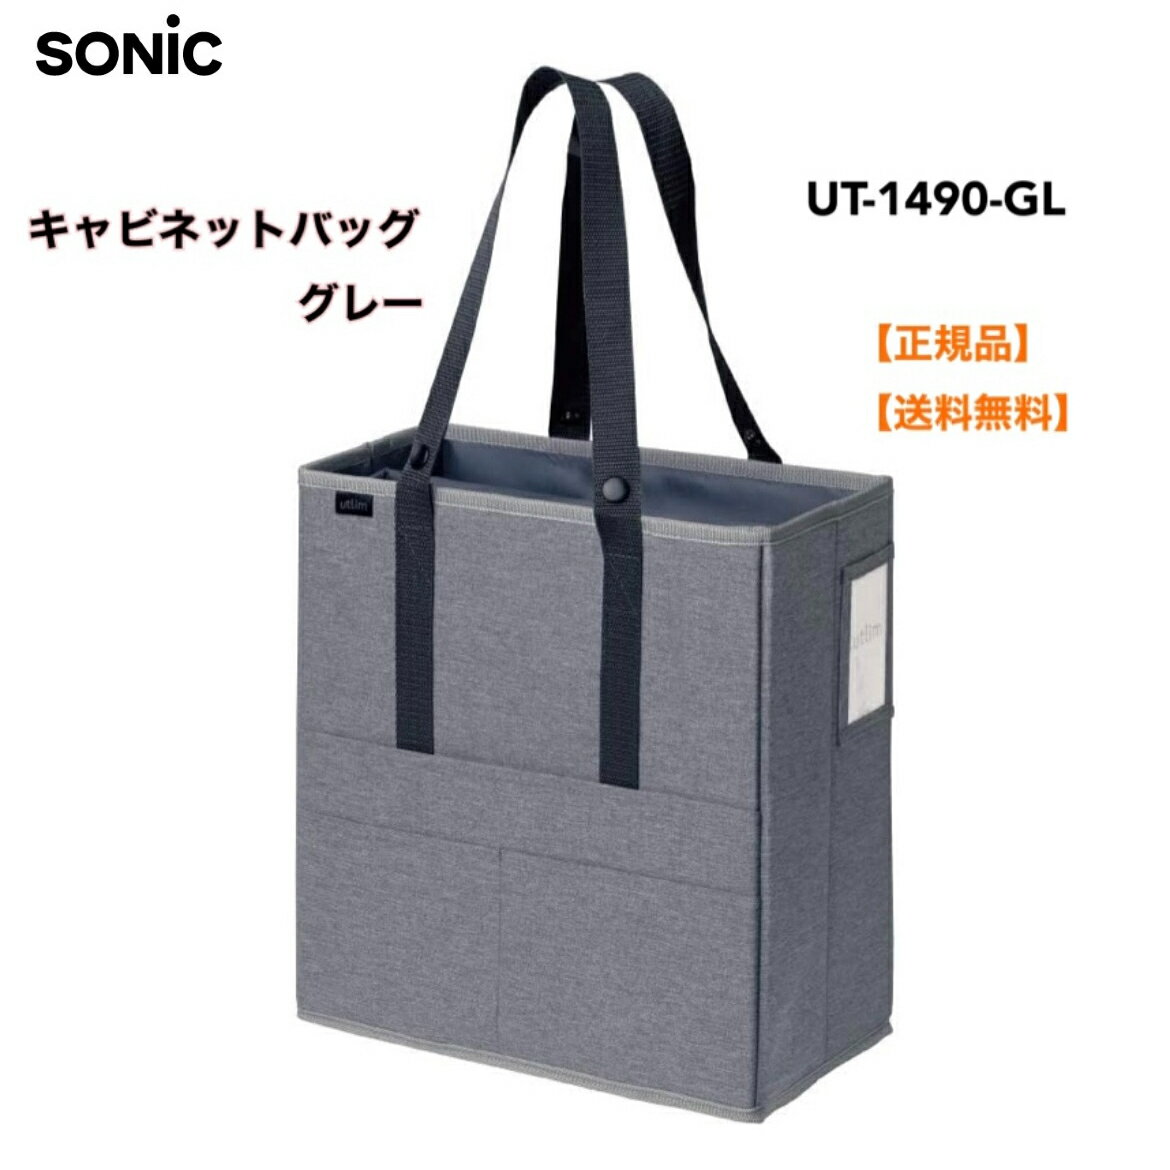 ●正規販売店 ソニック キャビネットバッグ ユートリム タテ型 14インチPC対応 グレー UT-1490-GL